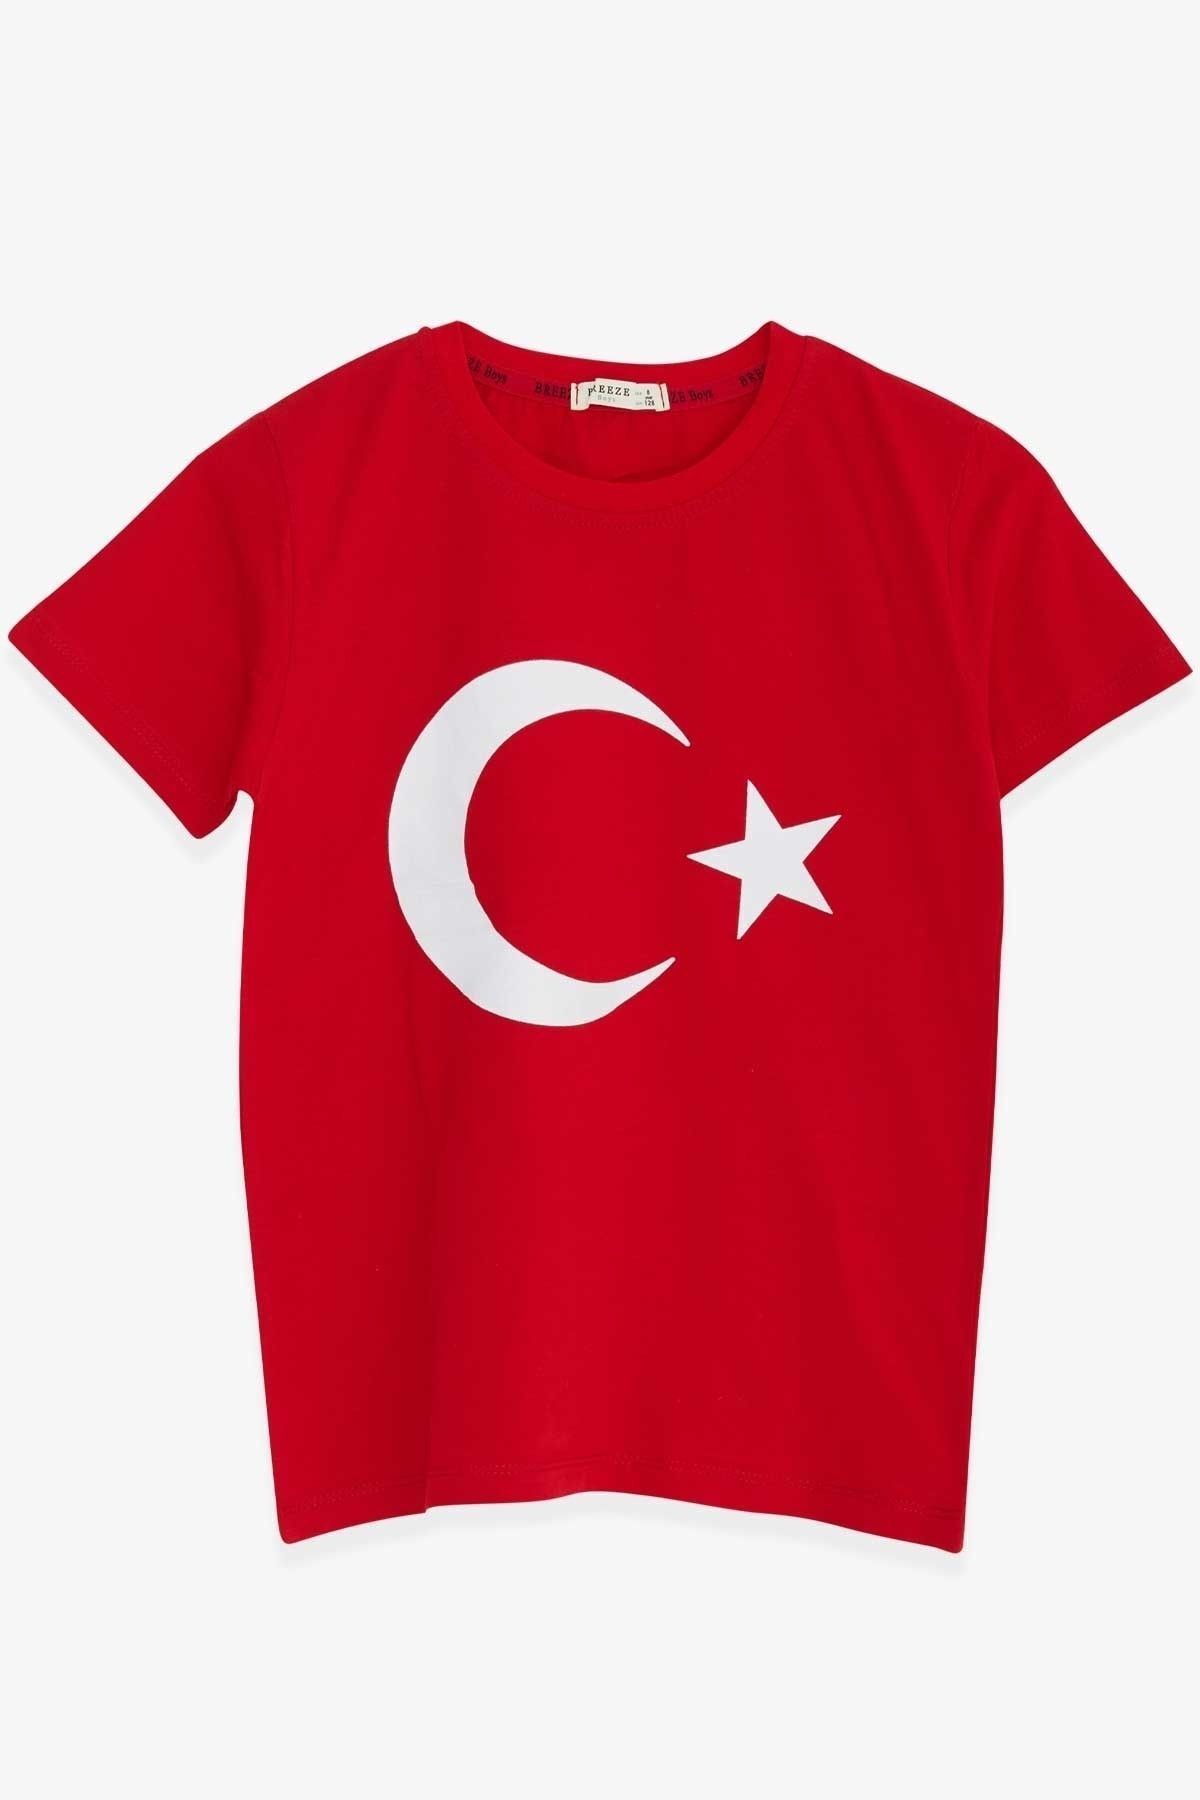 Breeze Çocuk Tişört Türk Bayraklı Kırmızı (10-12 Yaş)